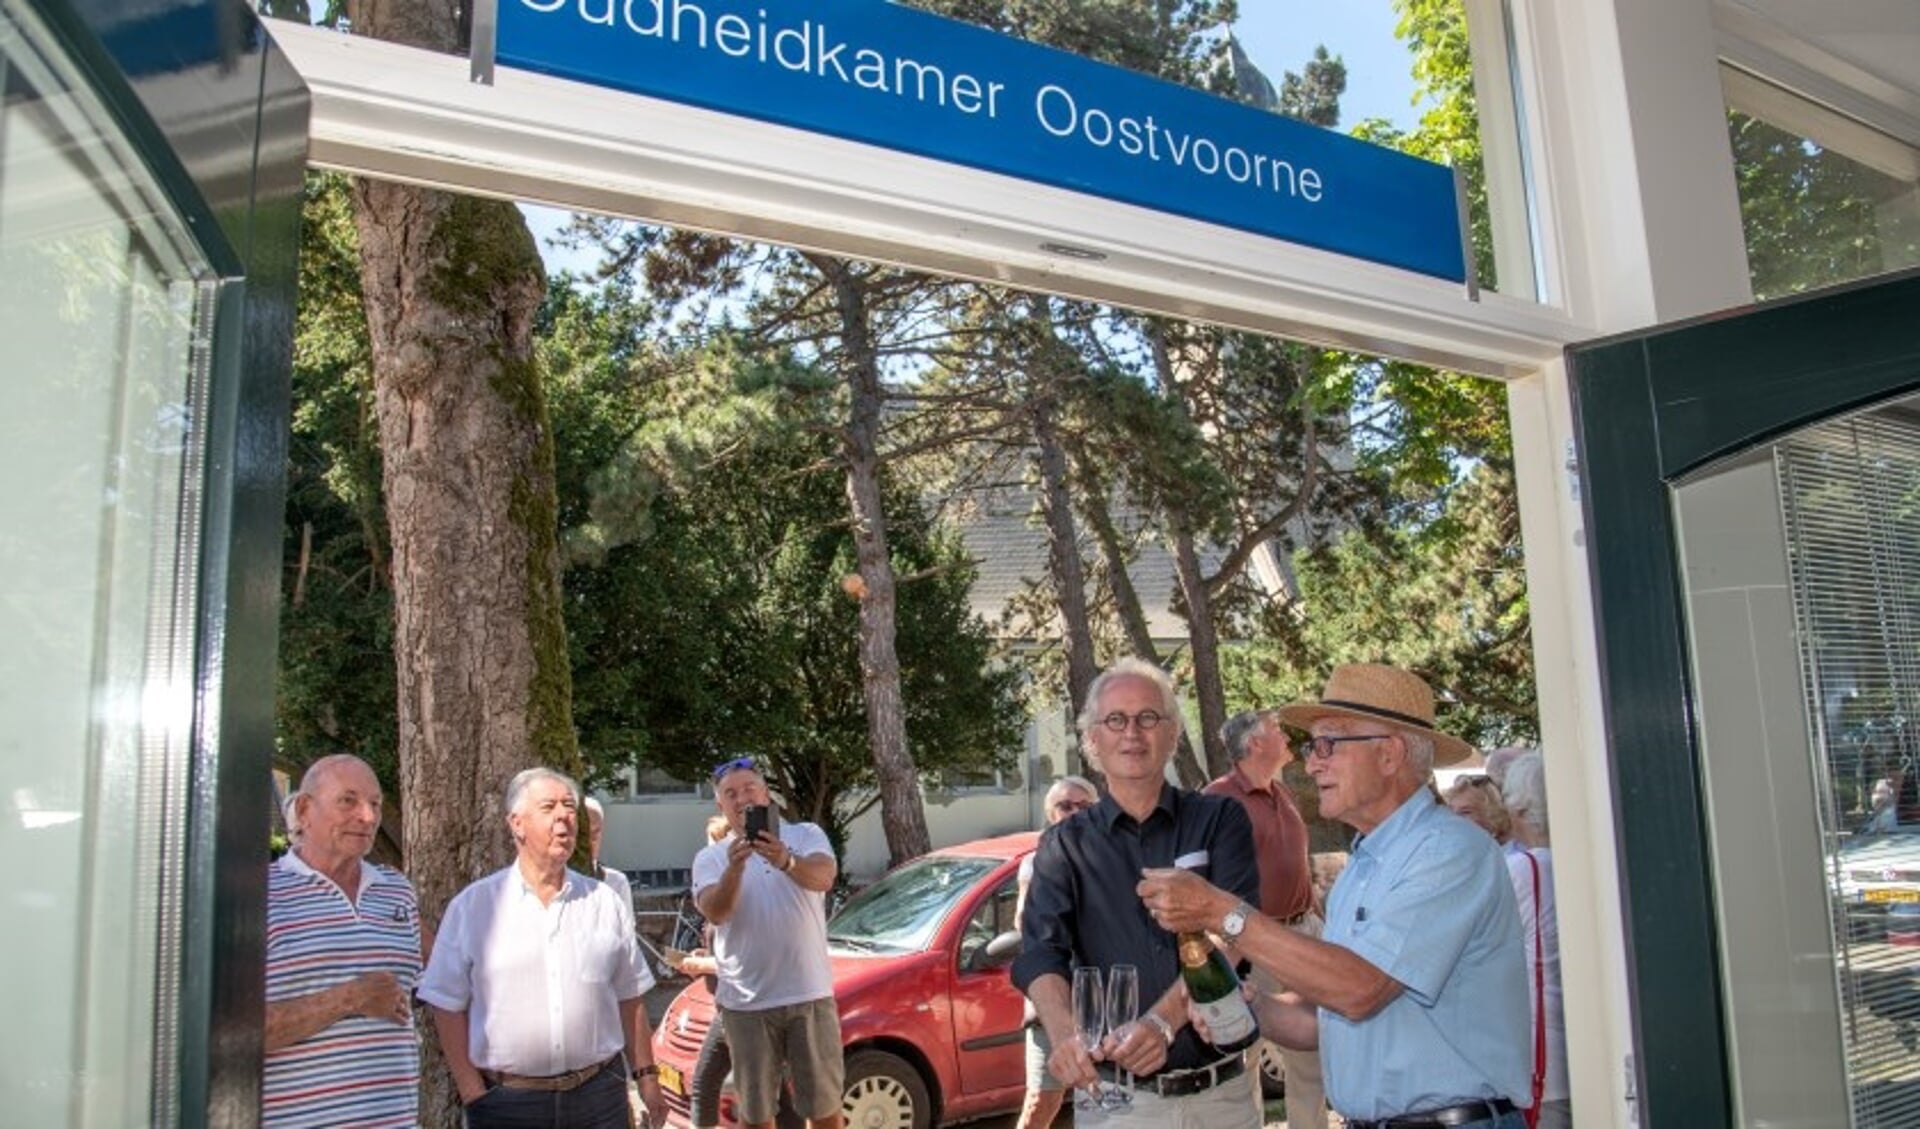 De opening van de Oudheidkamer in Oostvoorne in juni 2019